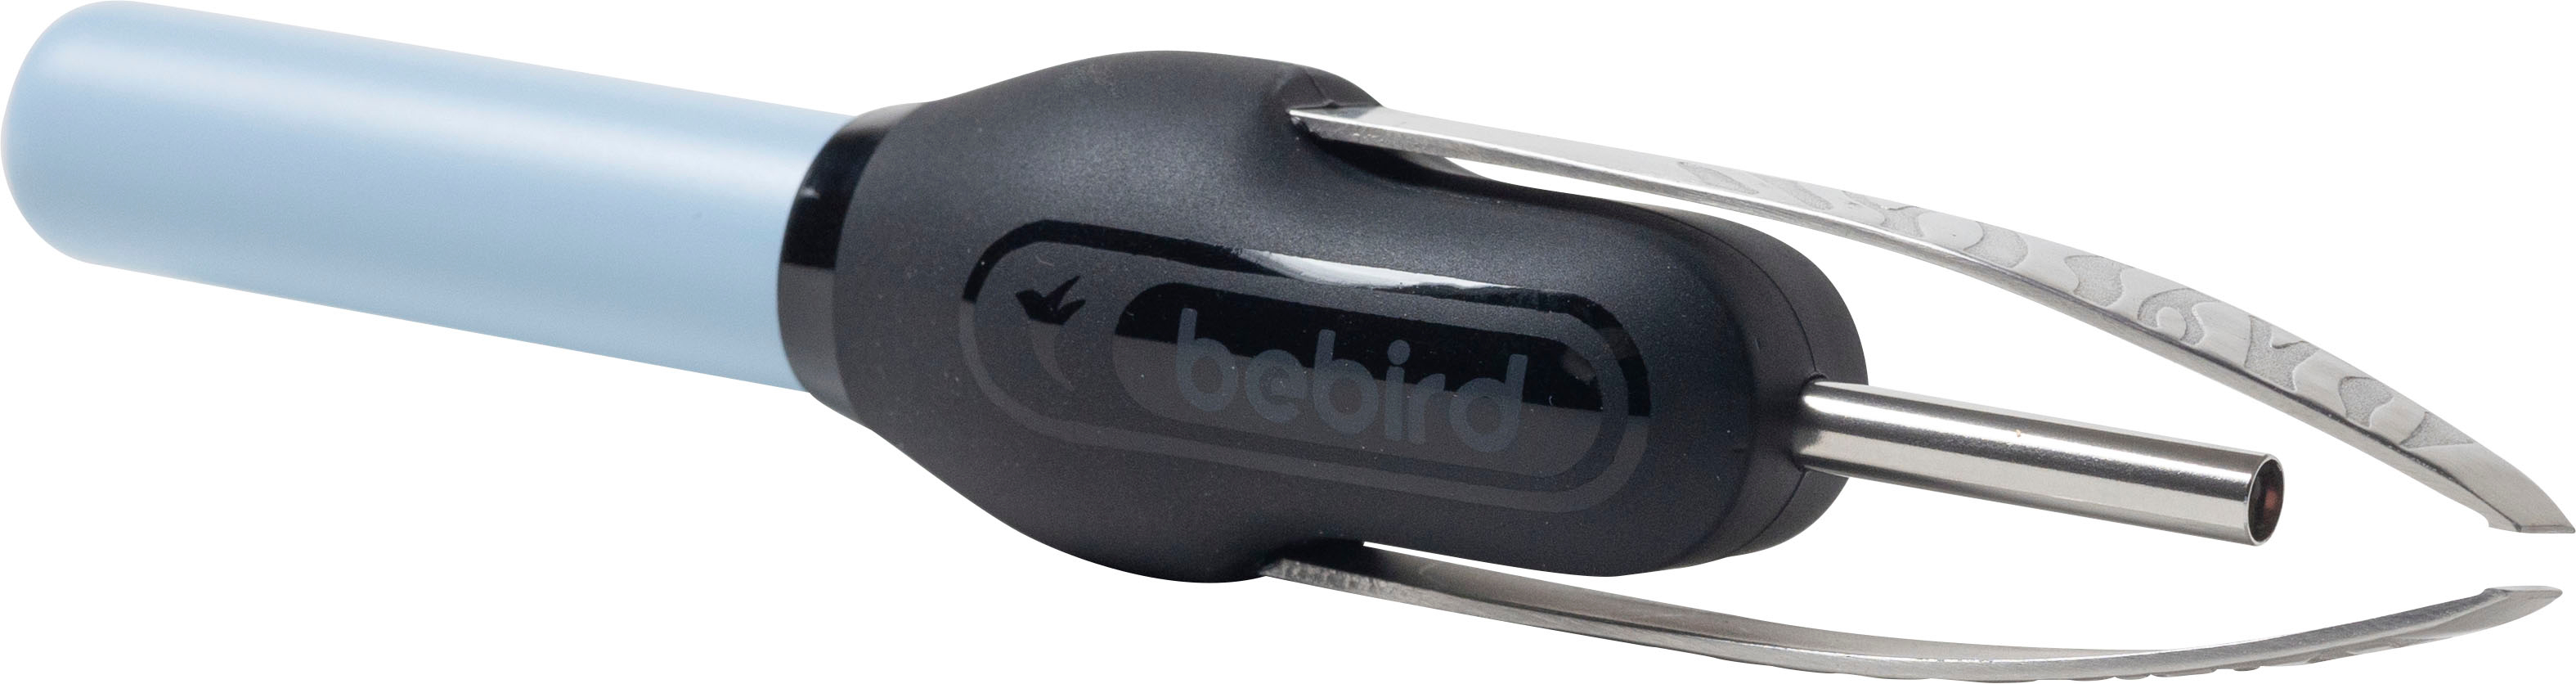 BEBIRD Visual Ear Cleaner- M9S M9S - Best Buy